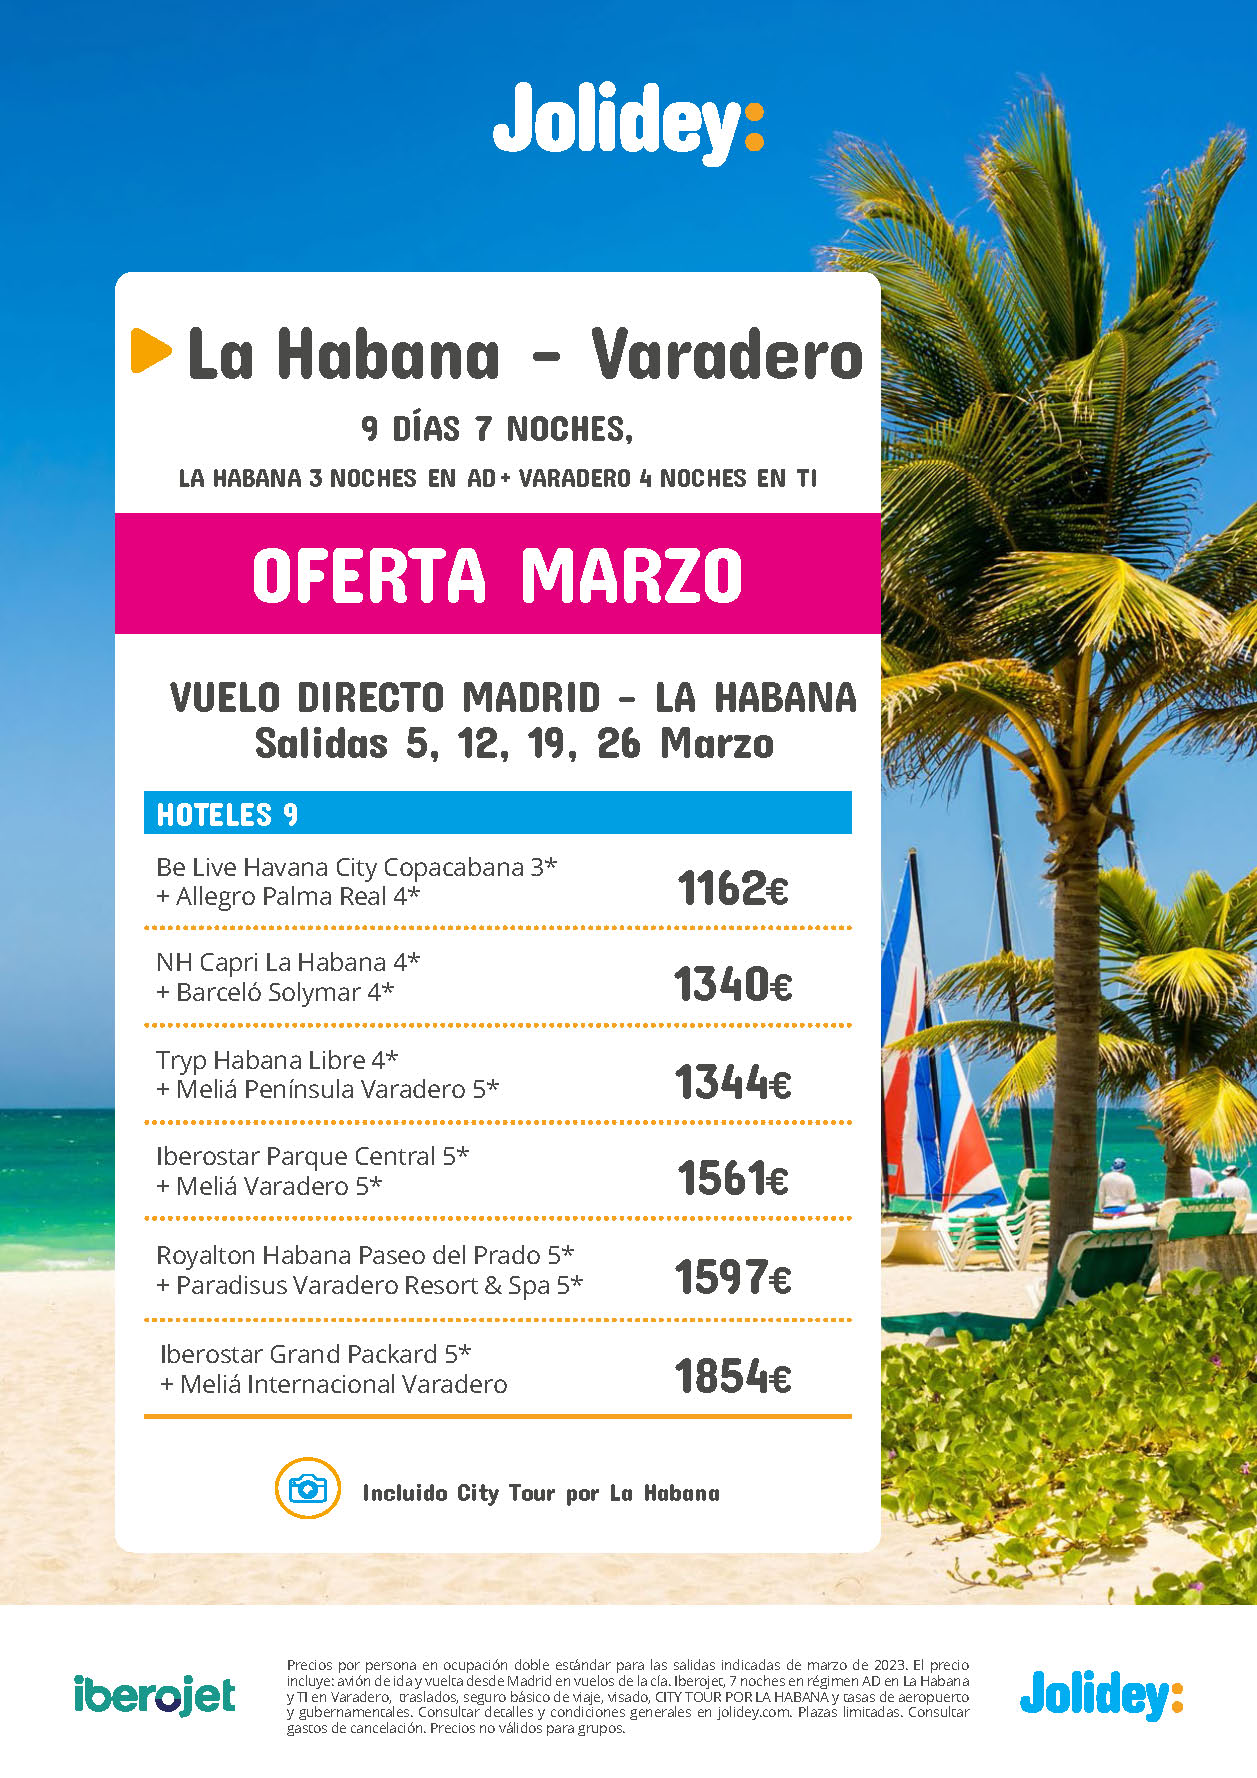 Oferta Jolidey Marzo 2023 Combinado La Habana AD - Varadero TI Cuba 9 dias salida en vuelo directo desde Madrid